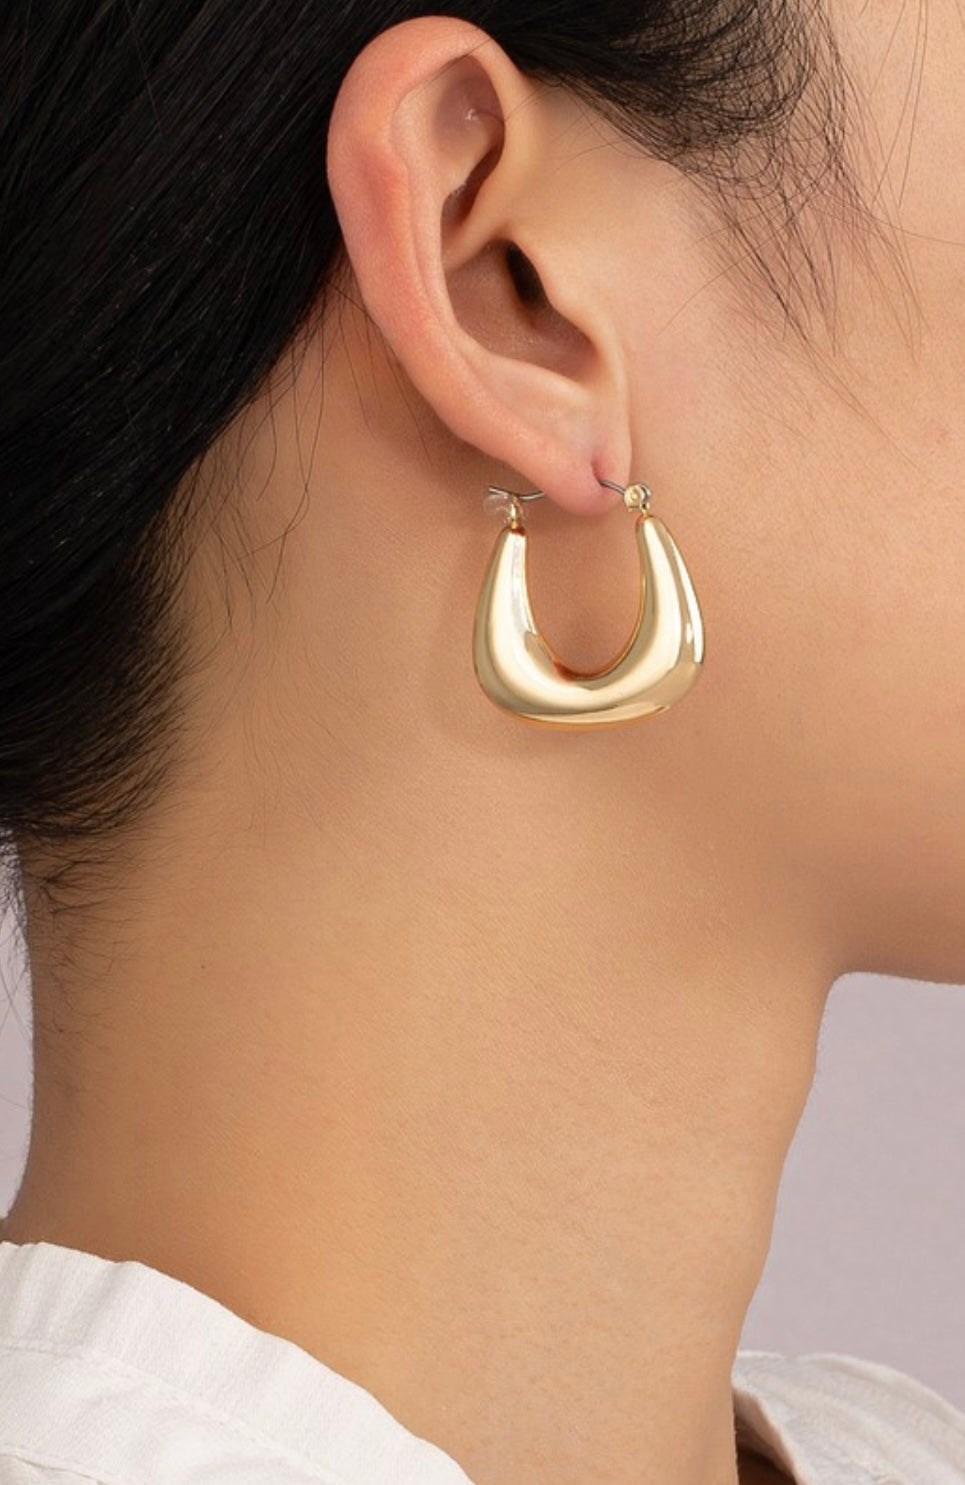 CANPANA earrings